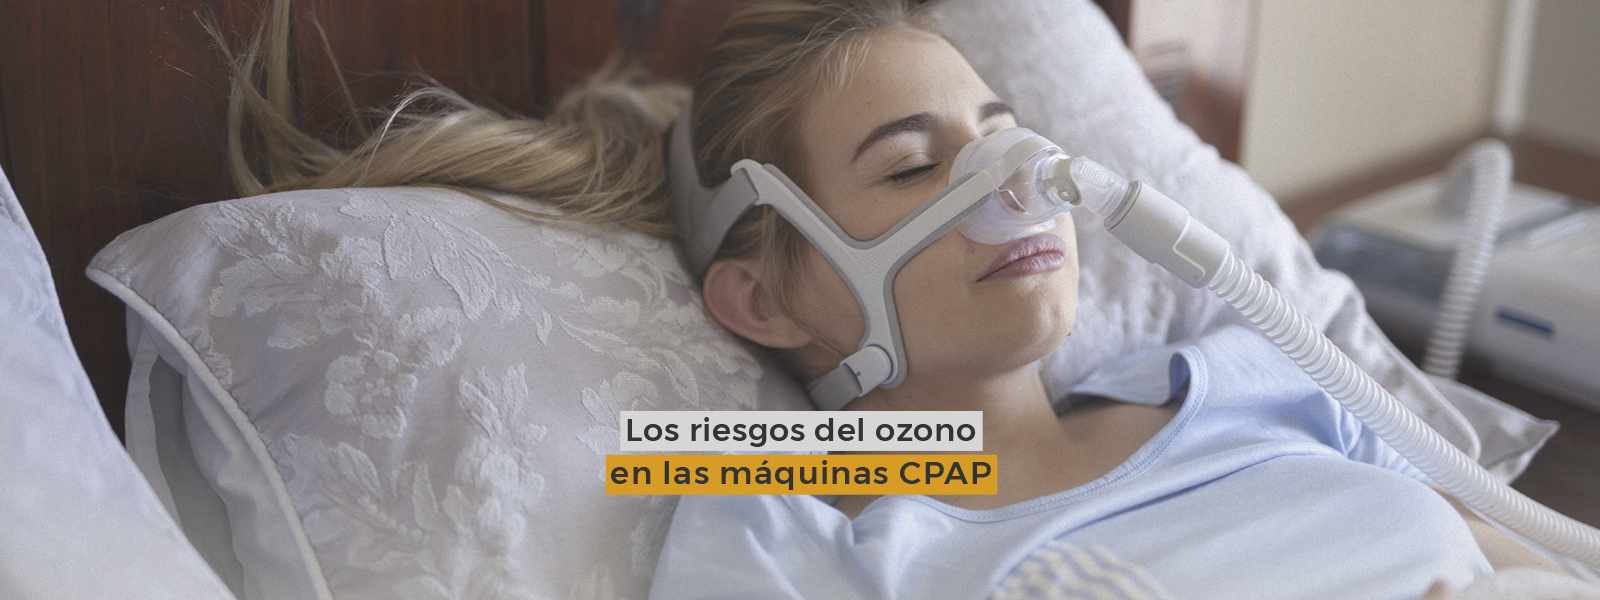 Los riesgos del ozono en las máquinas CPAP